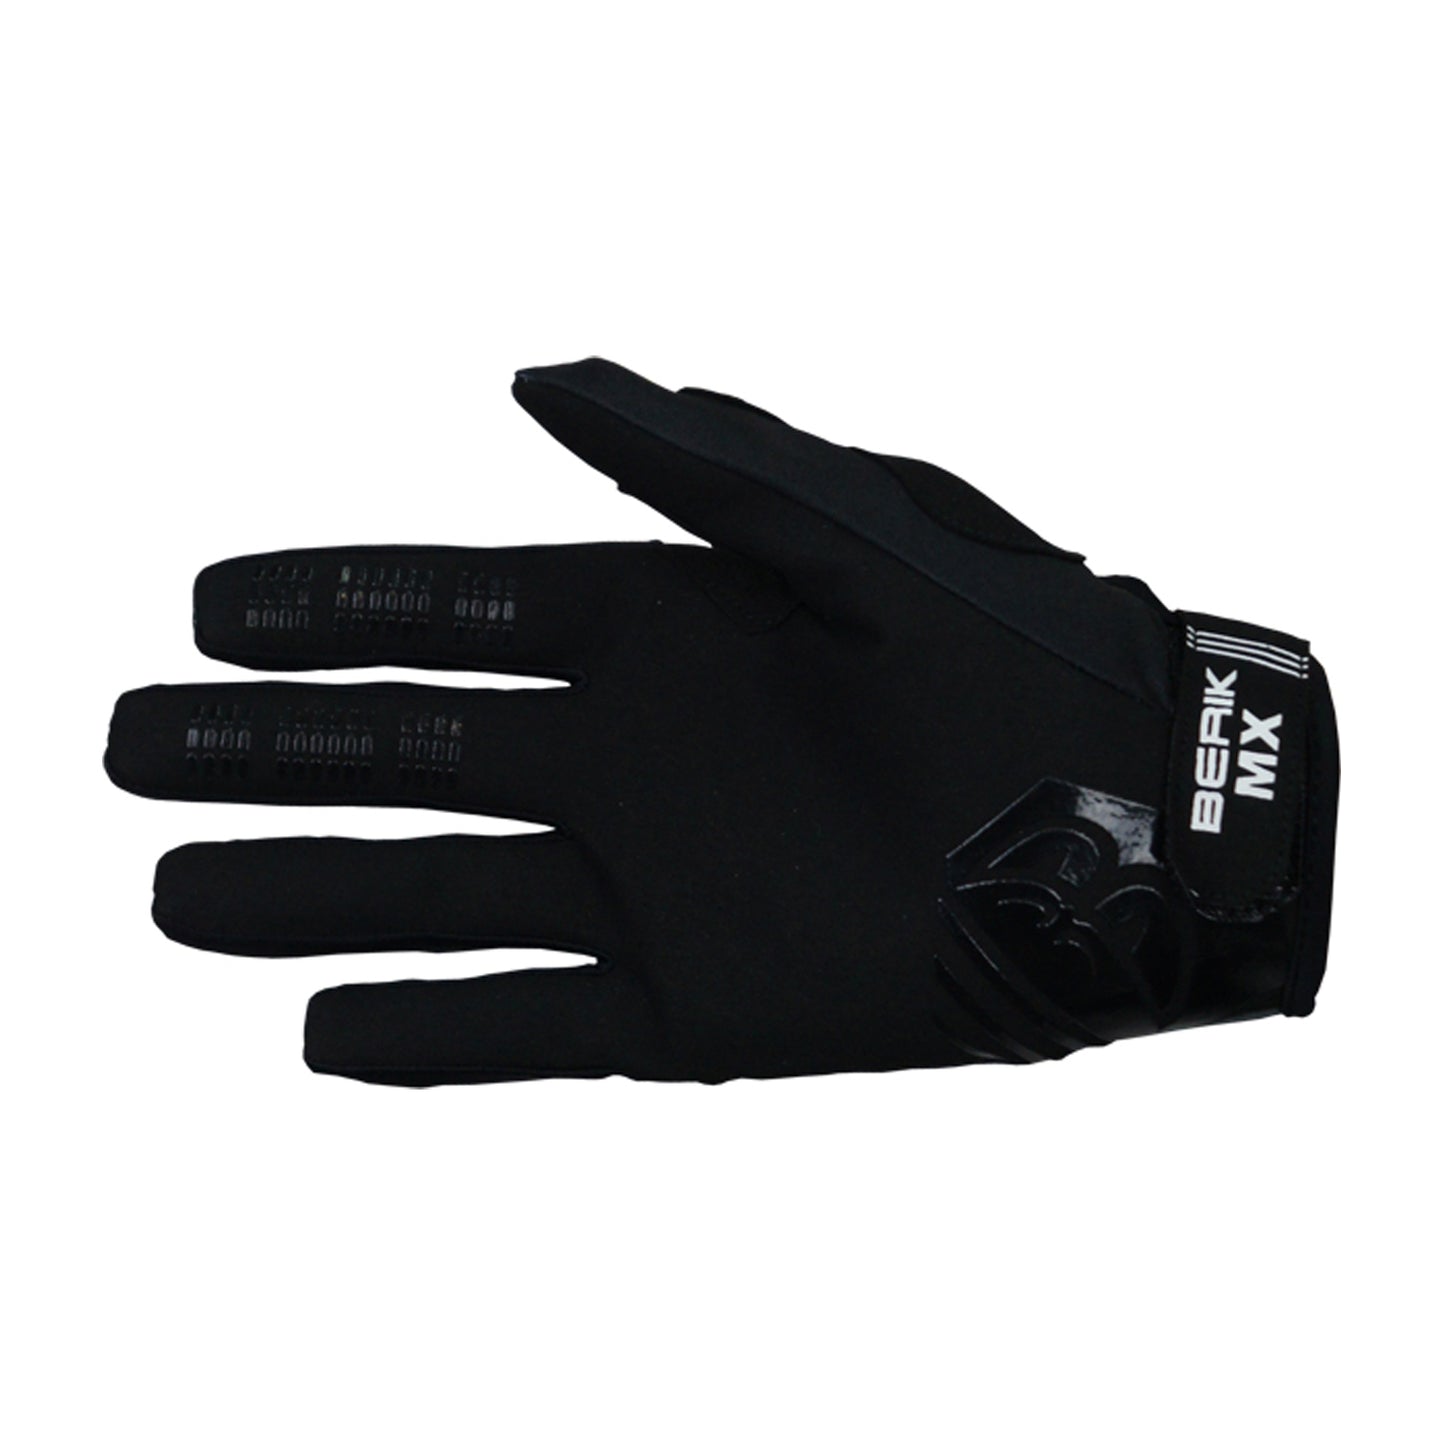 Pre-order sale JG-227312-BK BLACK / ORANGE BERIK MX gloves